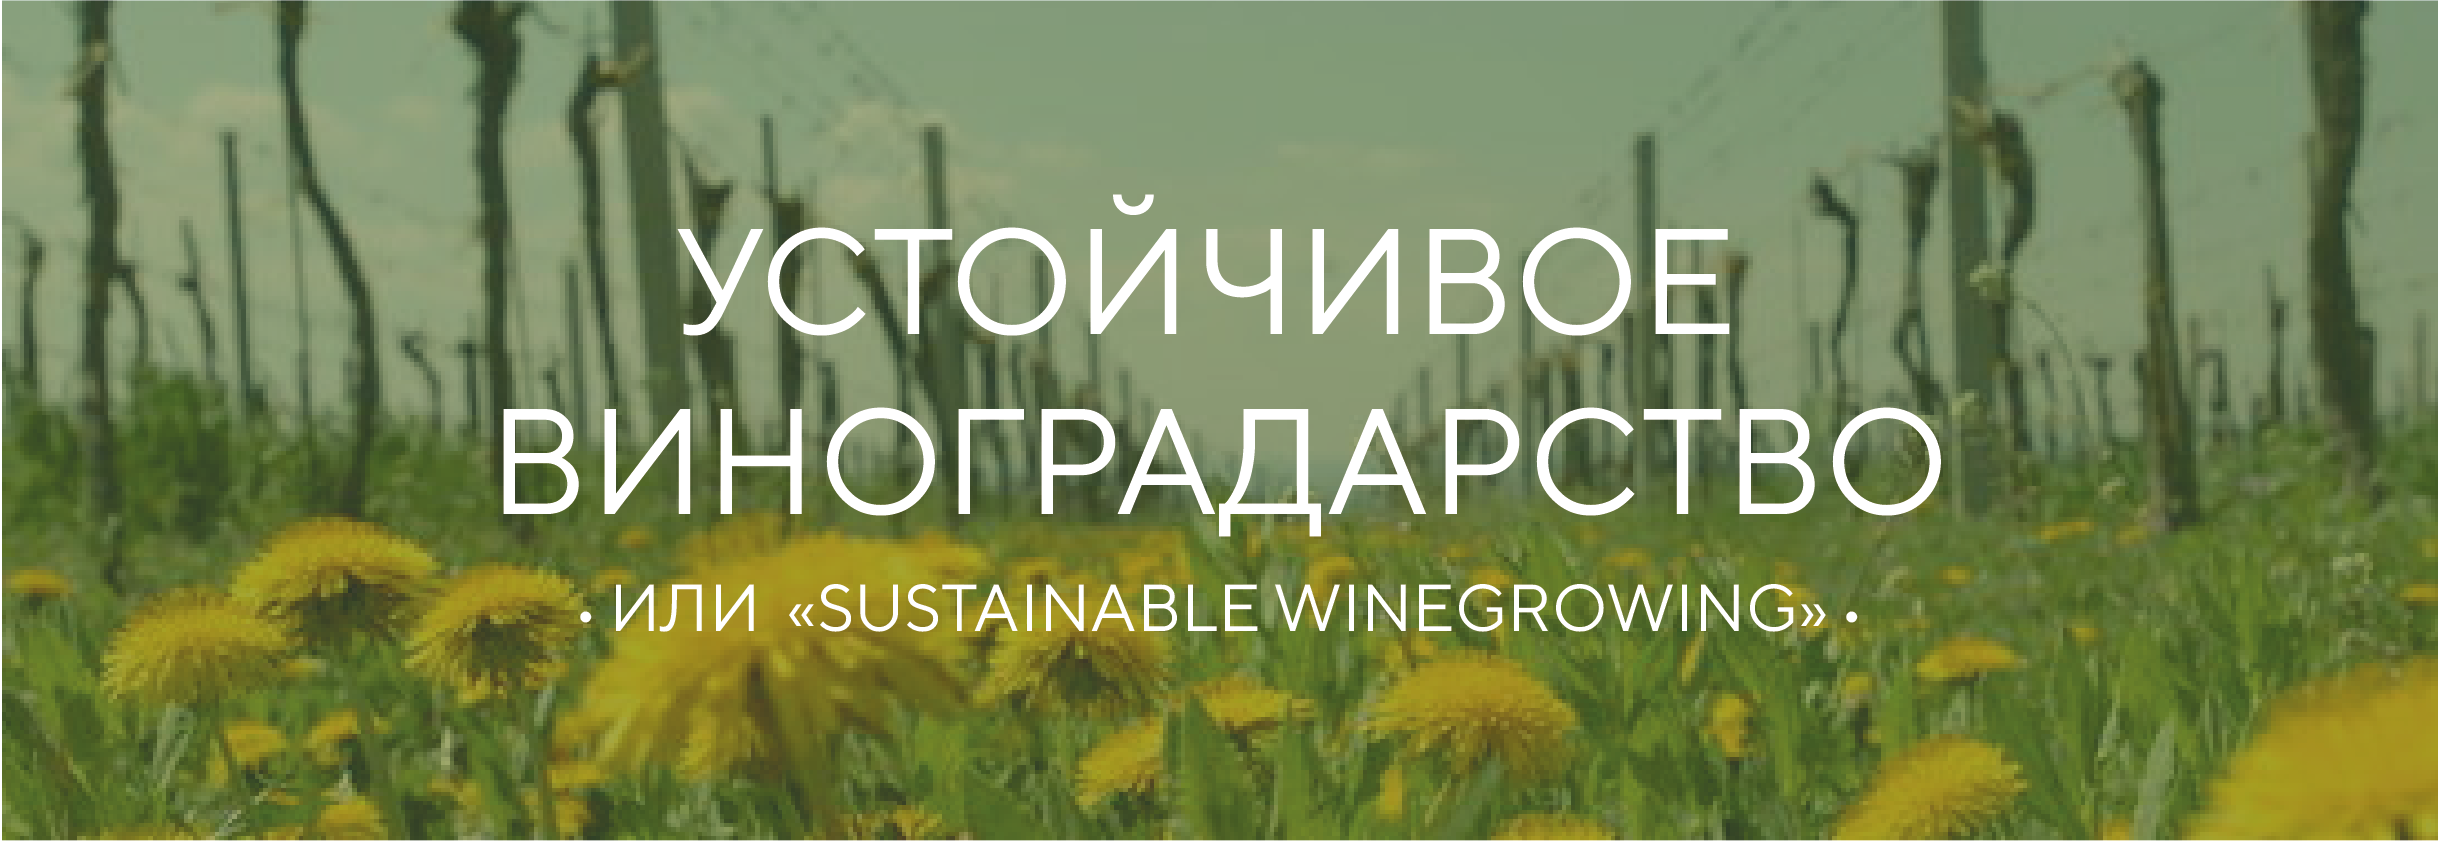 Устойчивое виноградарство / Sustainable winegrowing